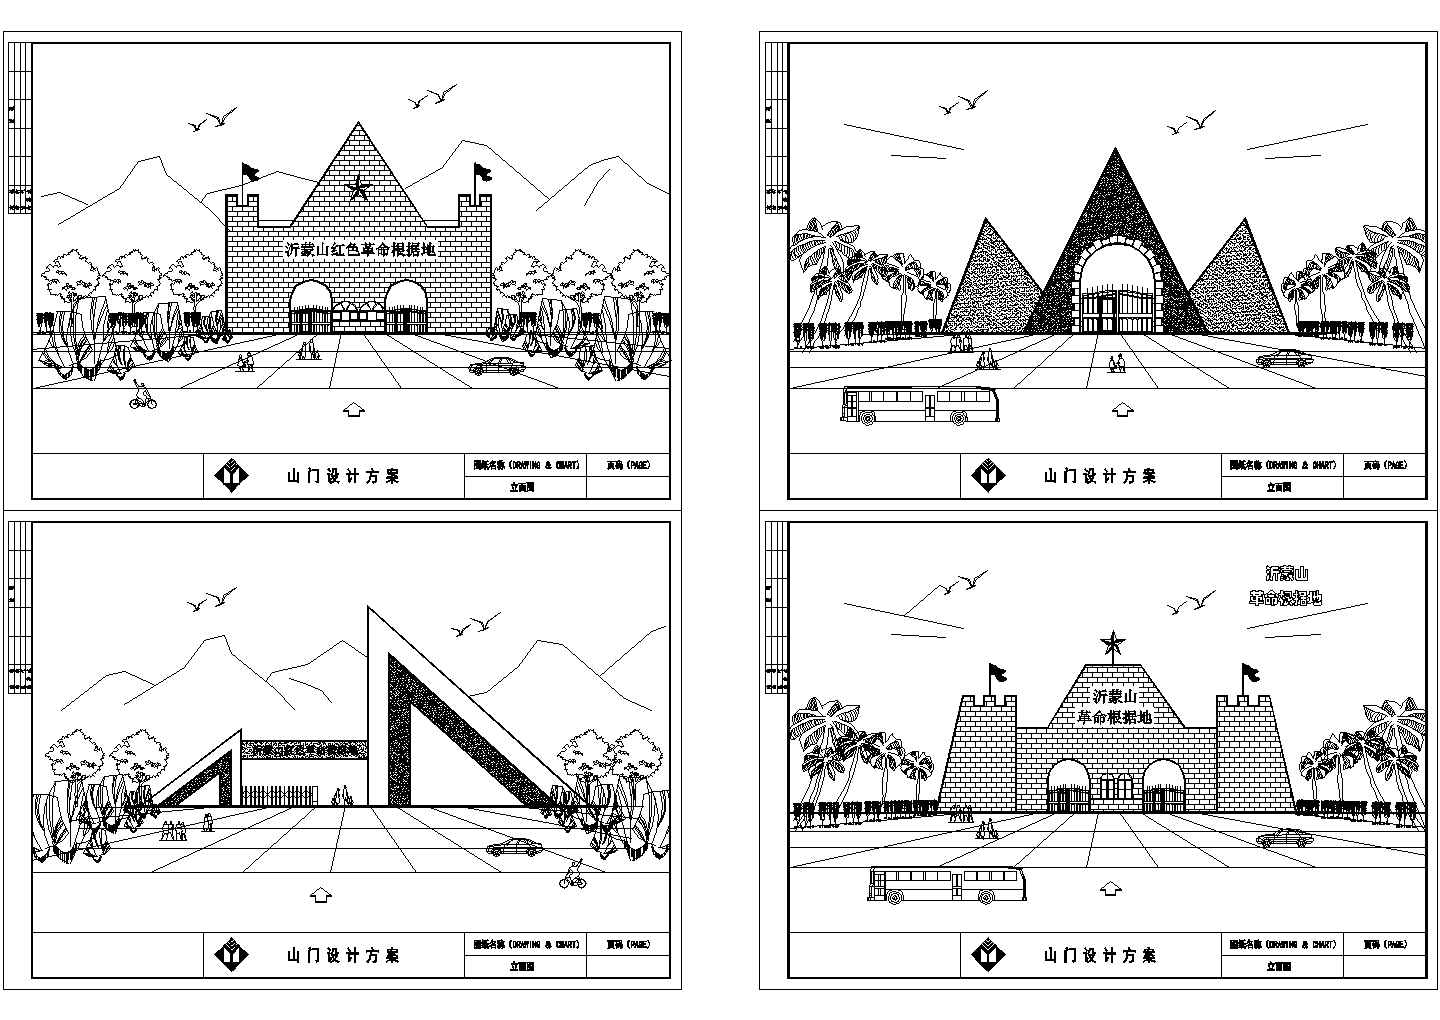 井冈山某红色旅游景区大门传达室全套建筑cad施工方案图纸